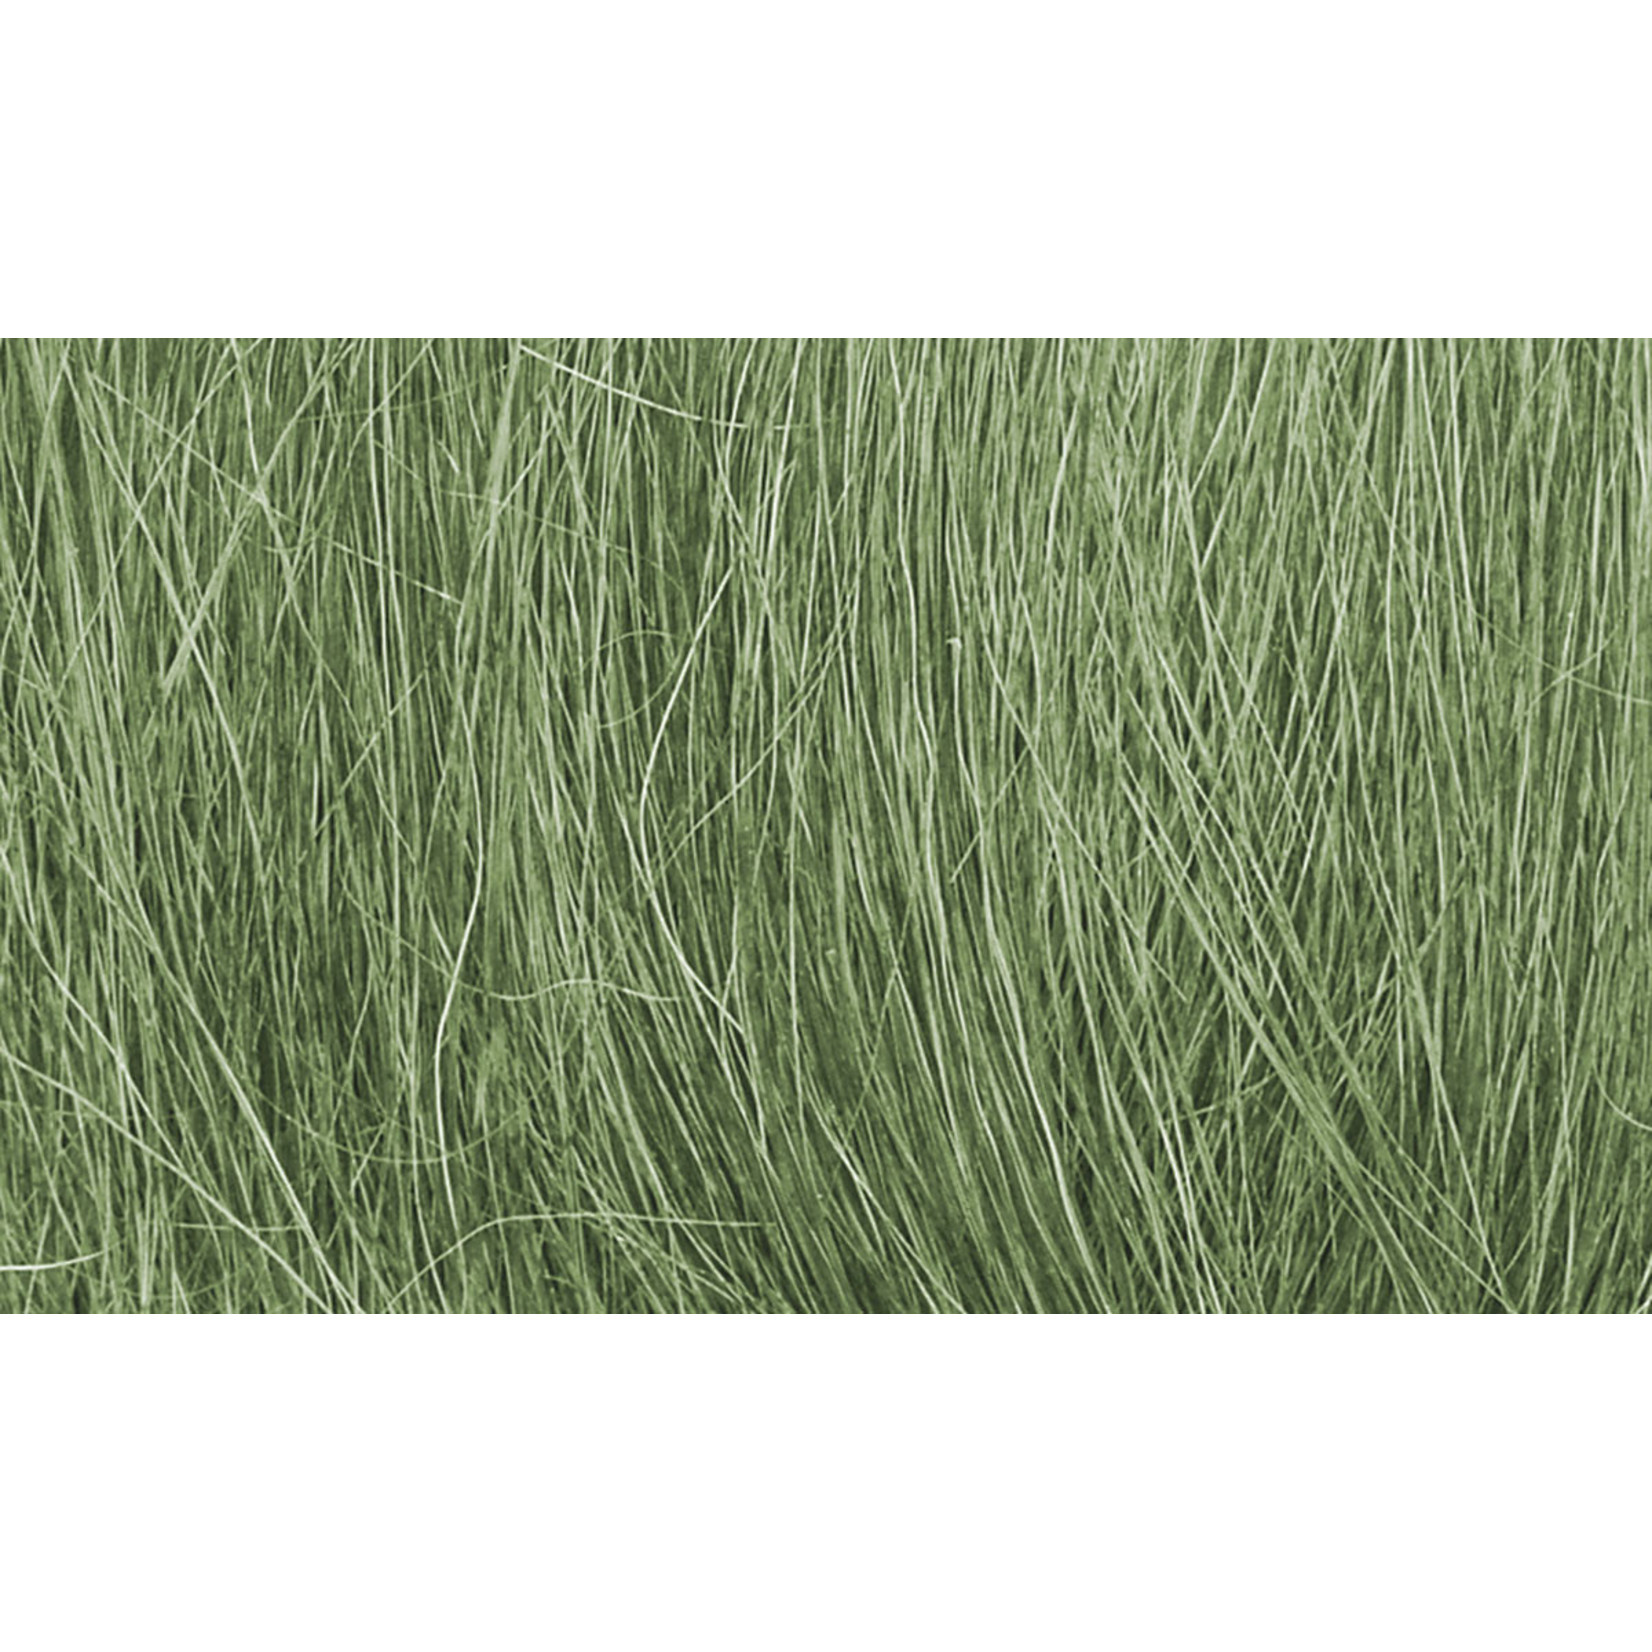 Woodland Scenics Woodland Scenics Field Grass Medium Green 8gr